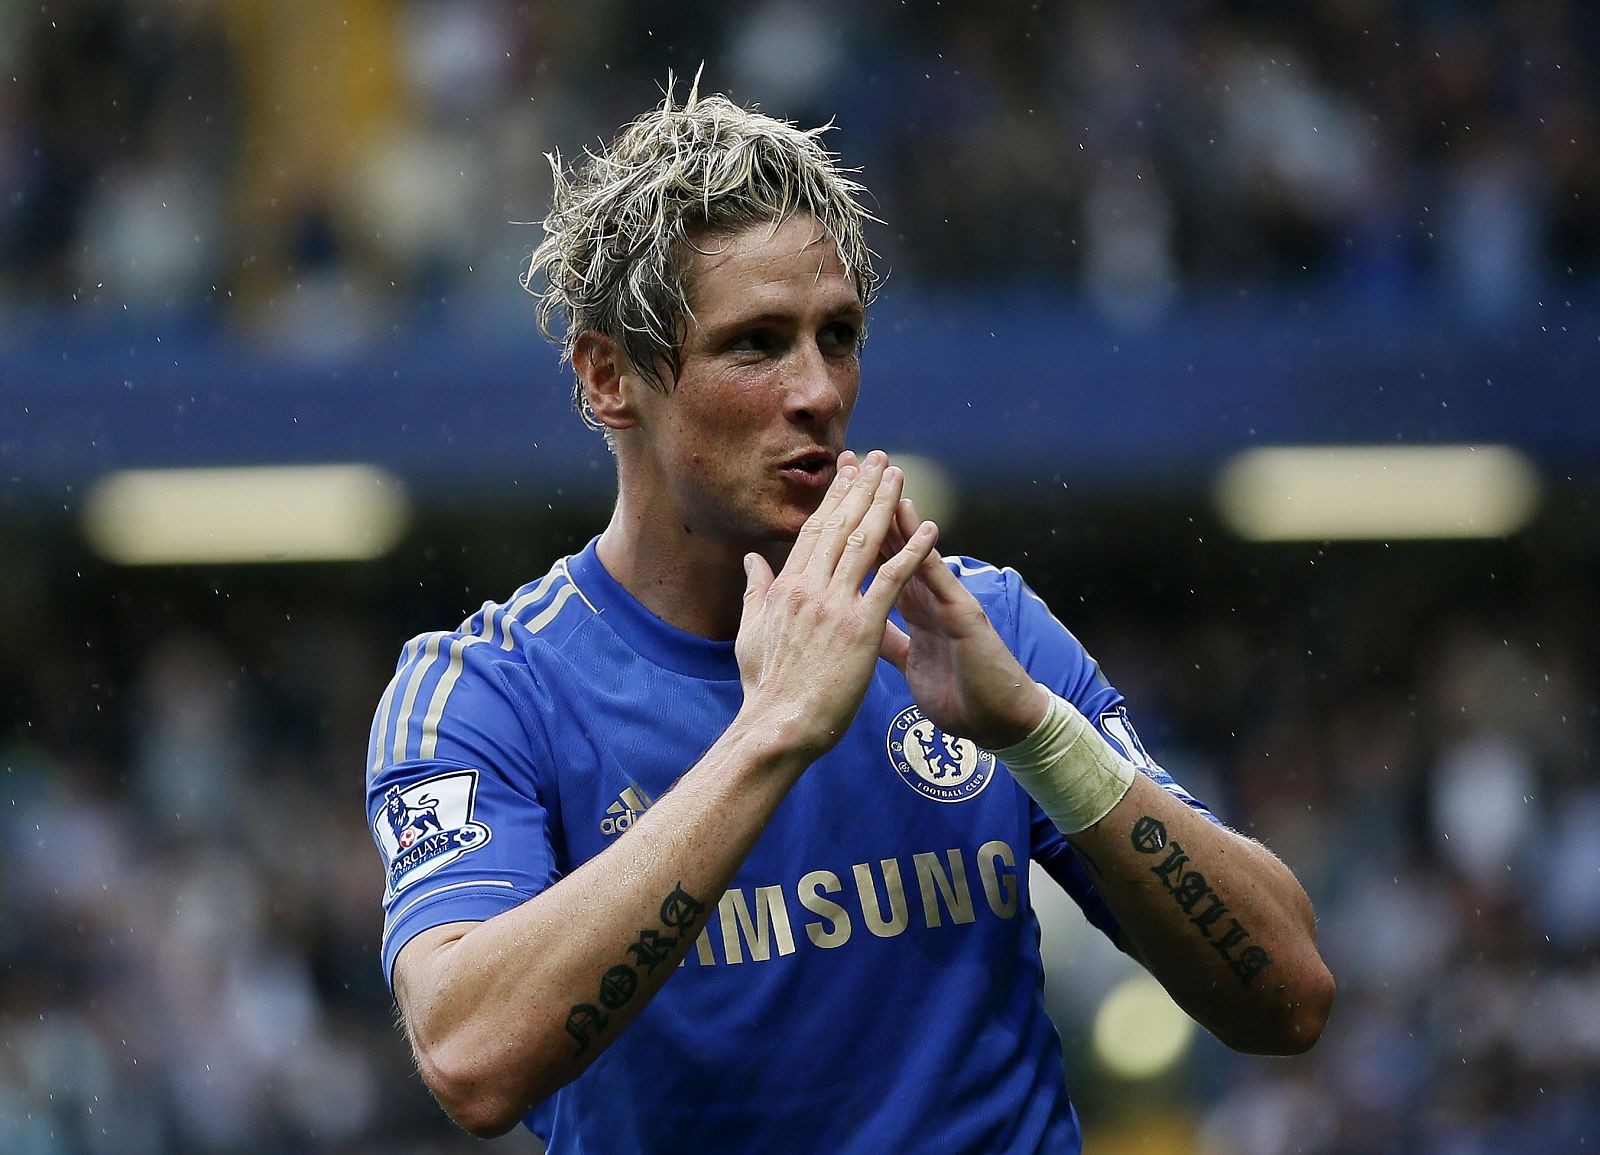 El delantero madrileño del Chelsea, Fernando Torres, se enfrentará el próximo viernes 30 de agosto frente a su ex equipo el Atlético de Madrid en la final de la Supercopa de Europa.